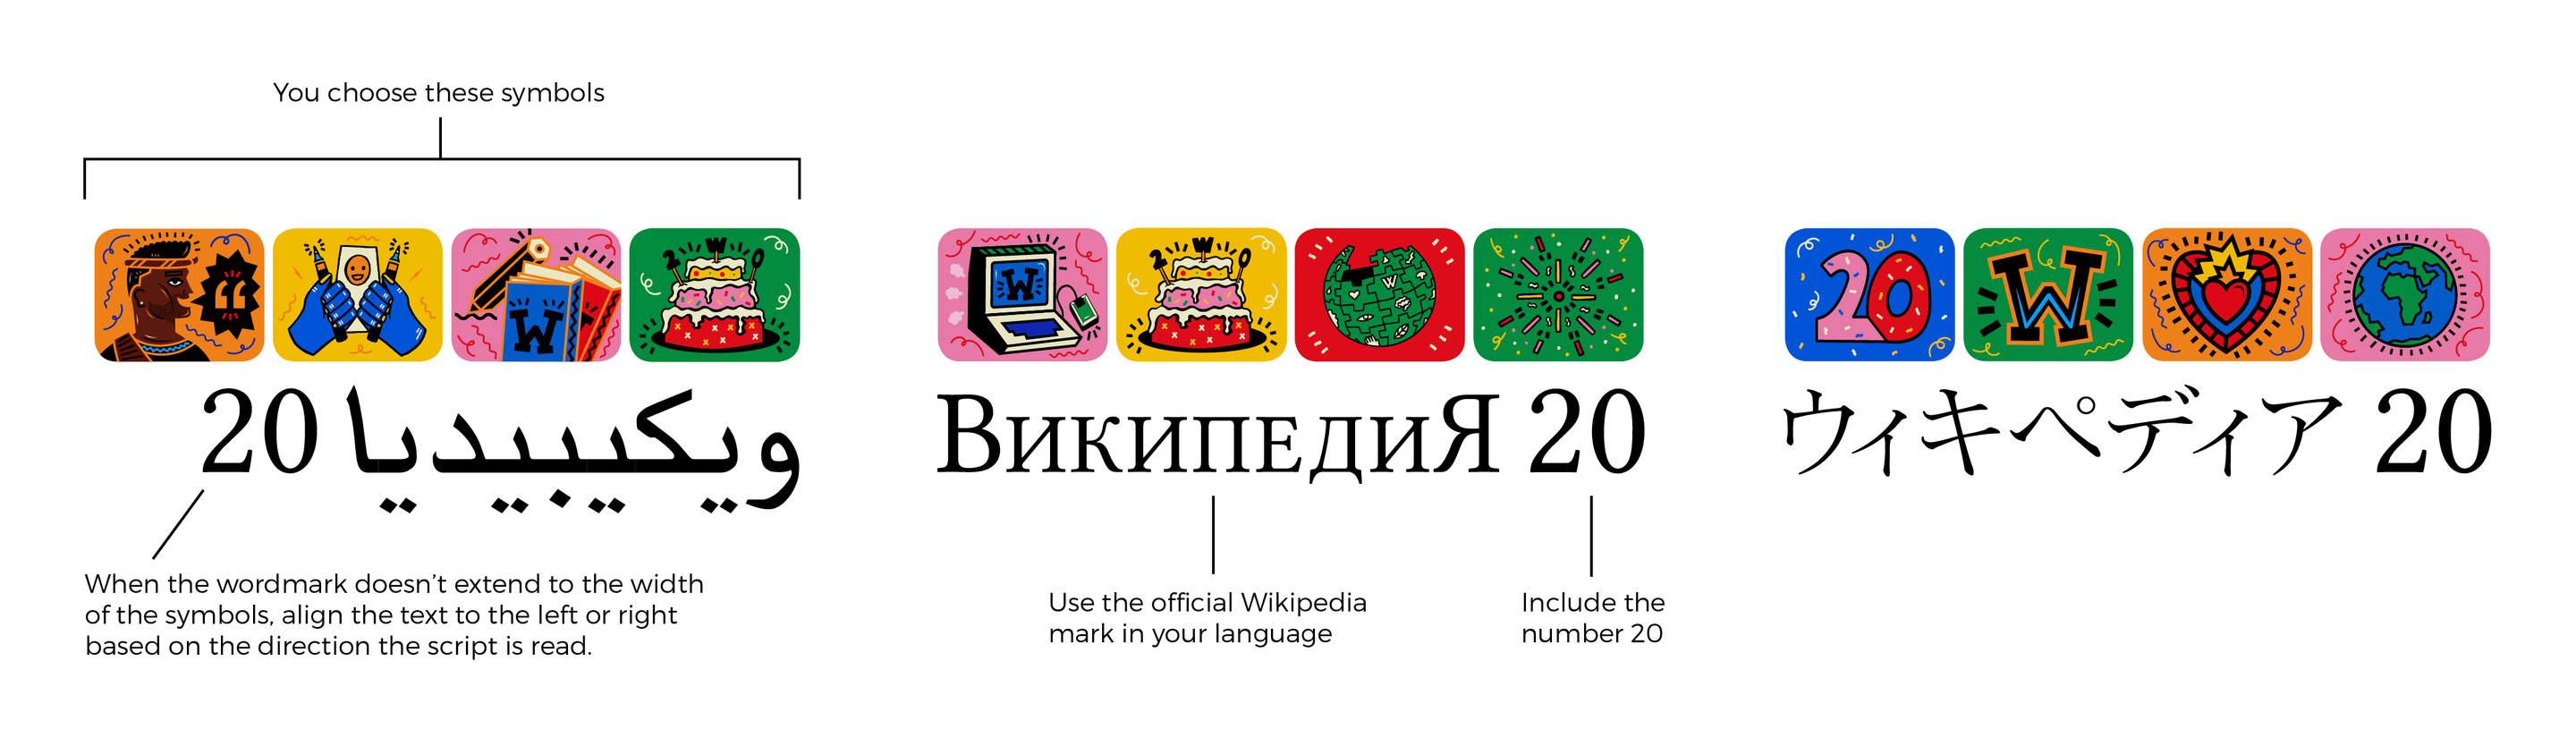 Википедия: праздничный дизайн